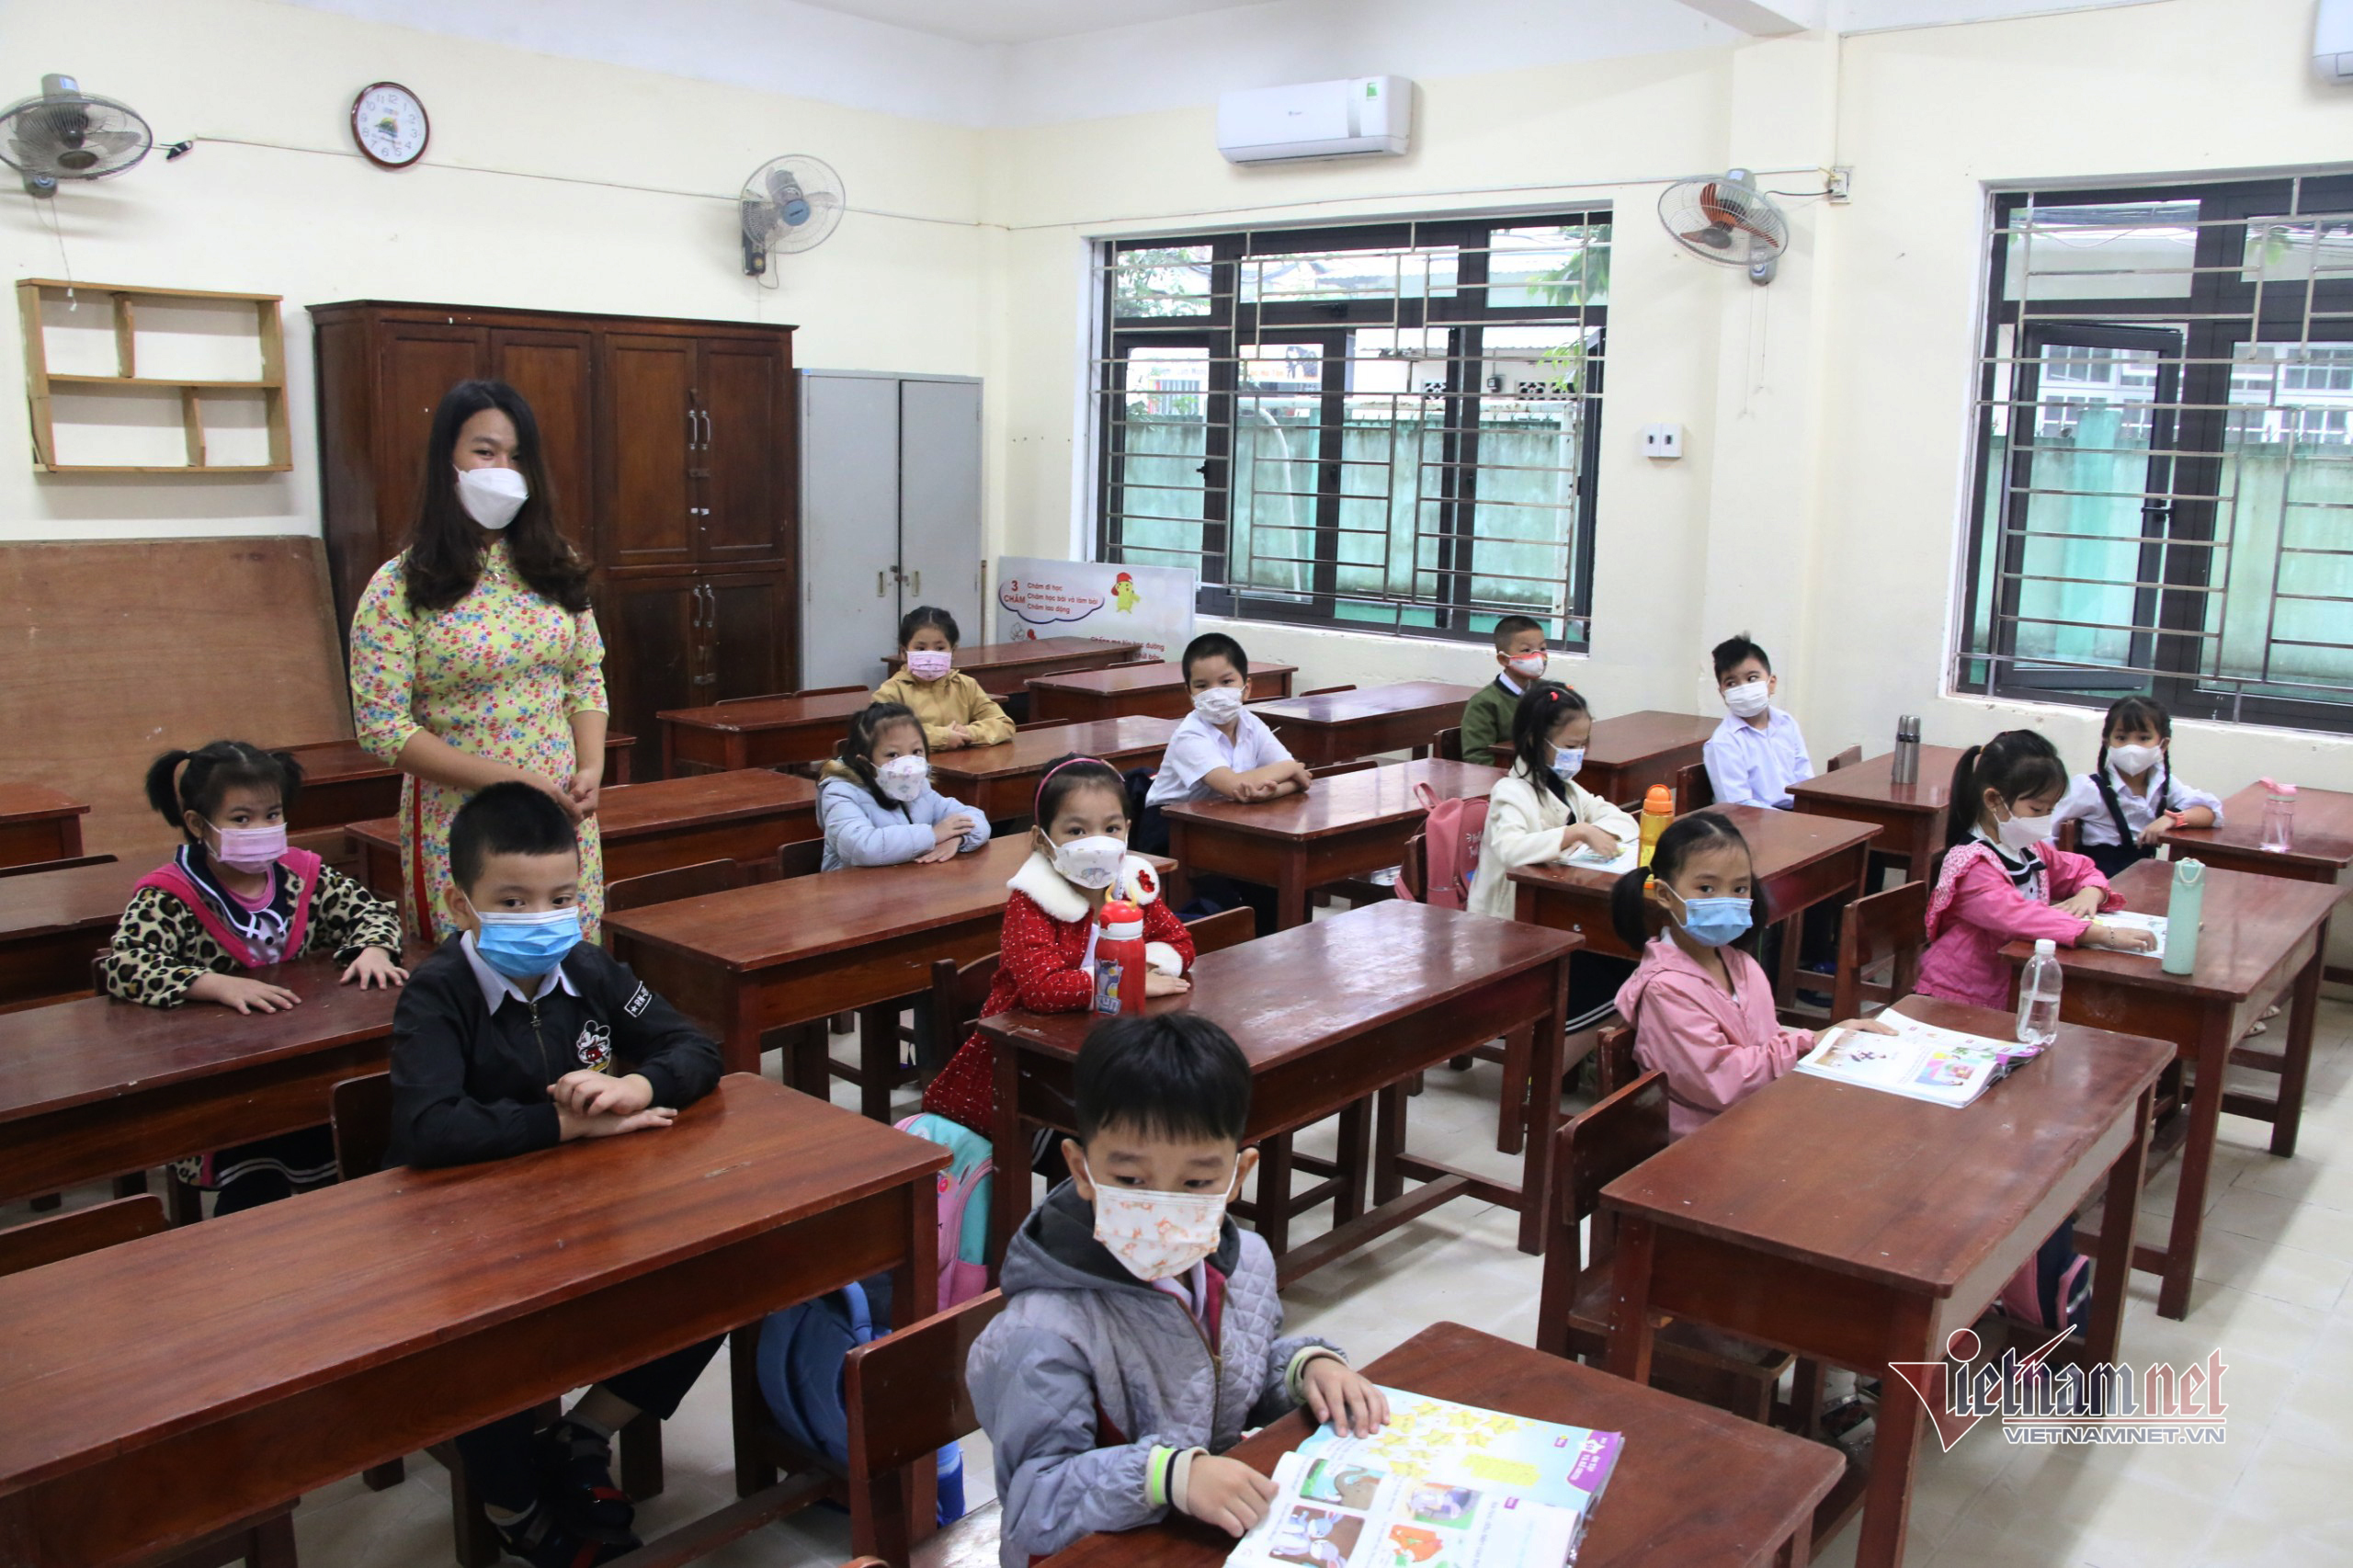 Ngày tựu trường, nhiều phụ huynh lớp 1 Đà Nẵng không cho con đến lớp